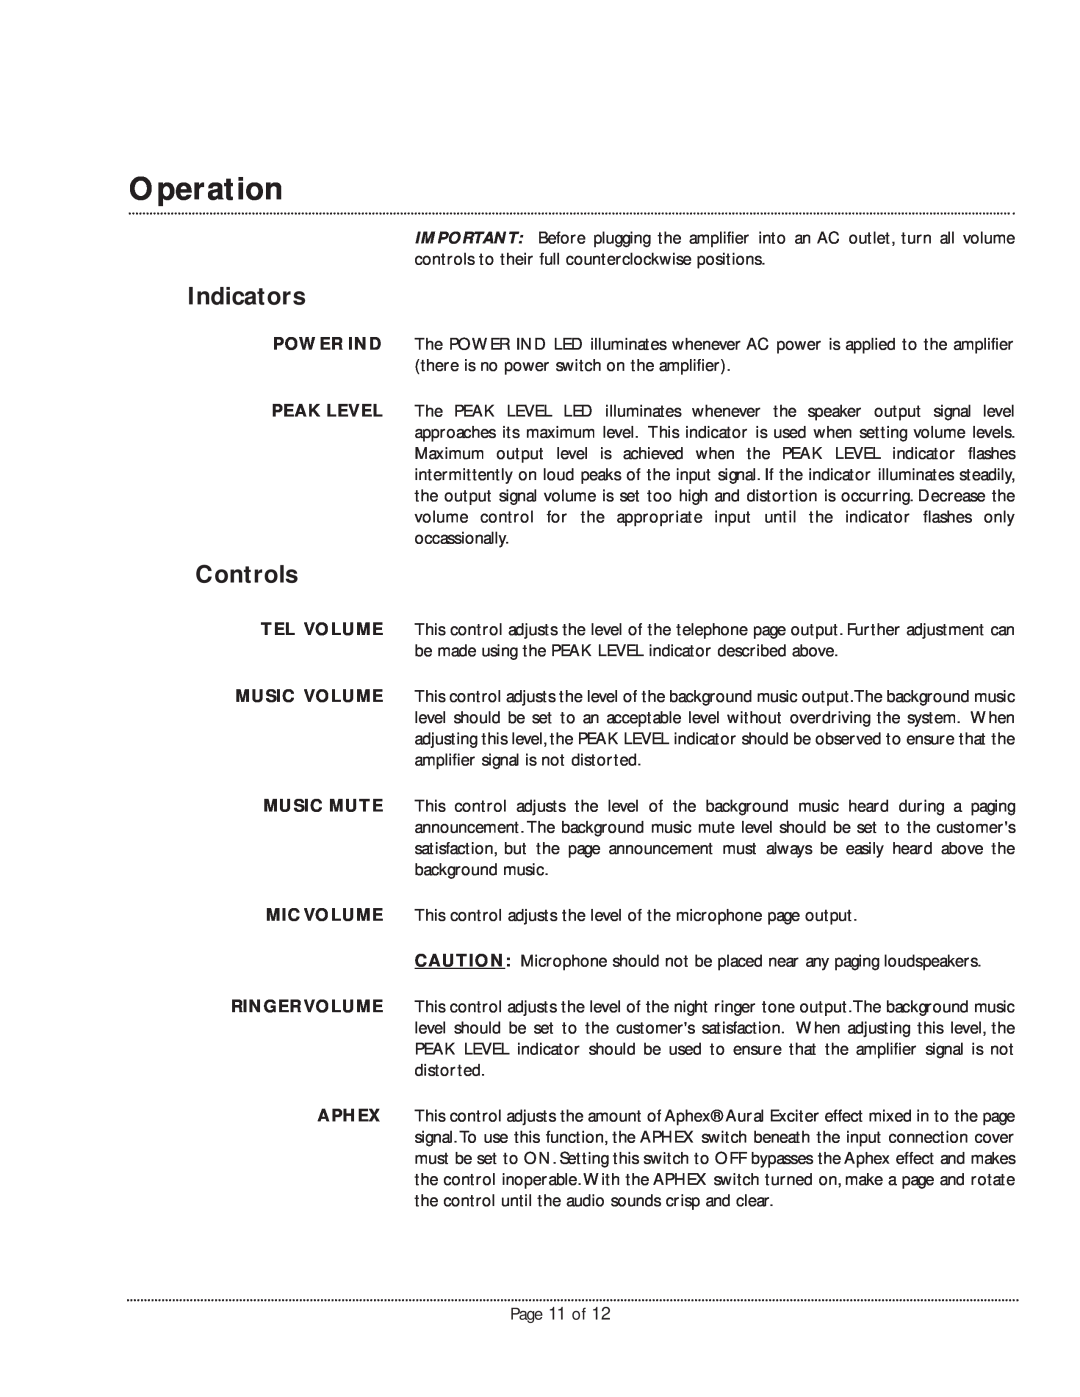 Bogen TPU250 manual Operation, Indicators, Controls 